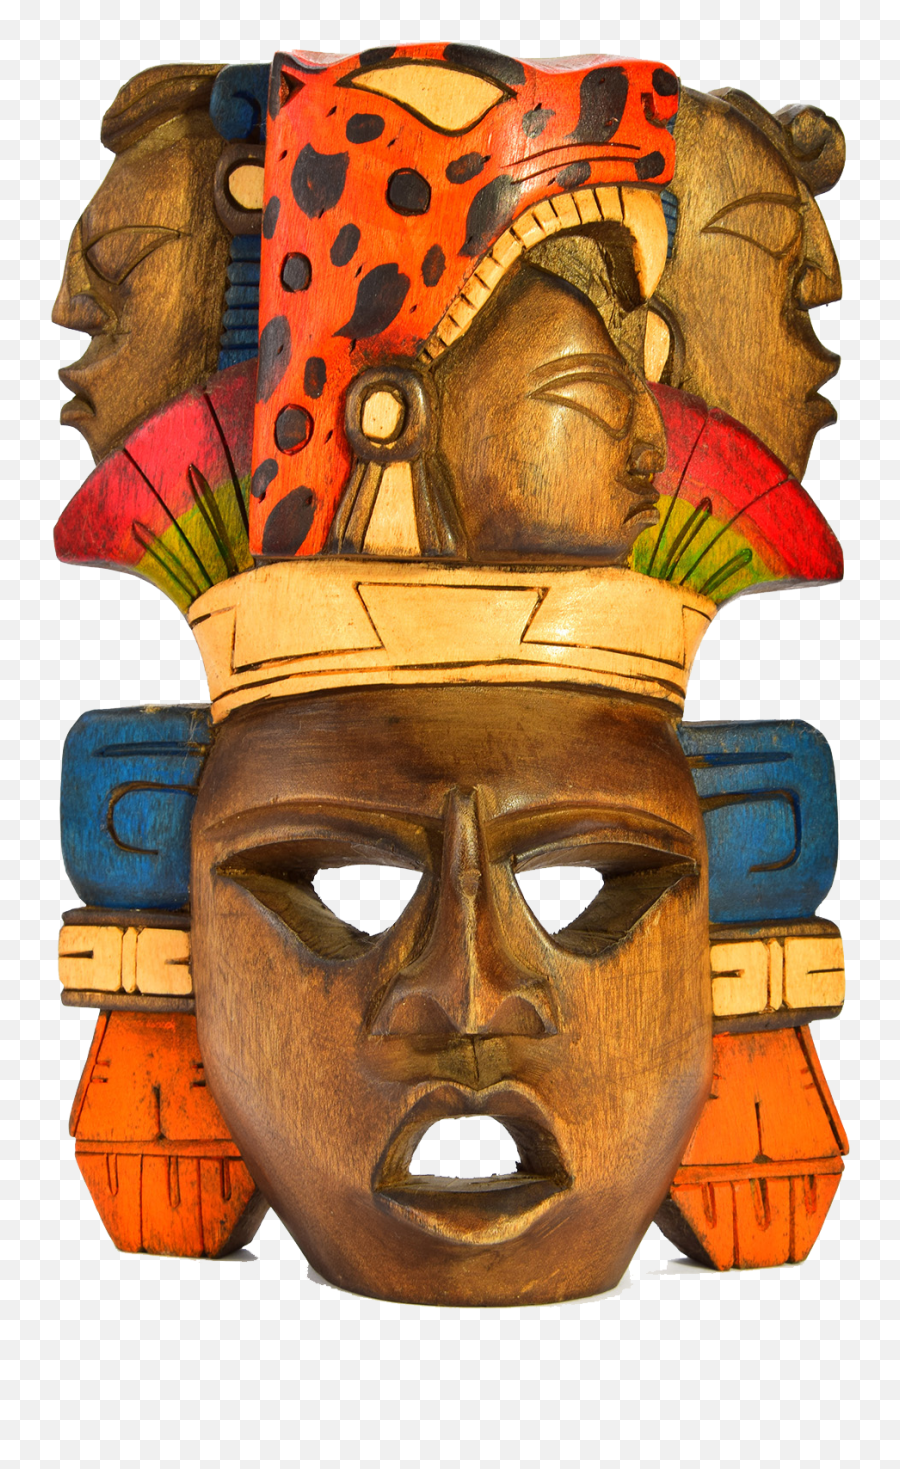 Download Masks Png Image For Free - Afrikan Mask Png Transparent,Masks Png